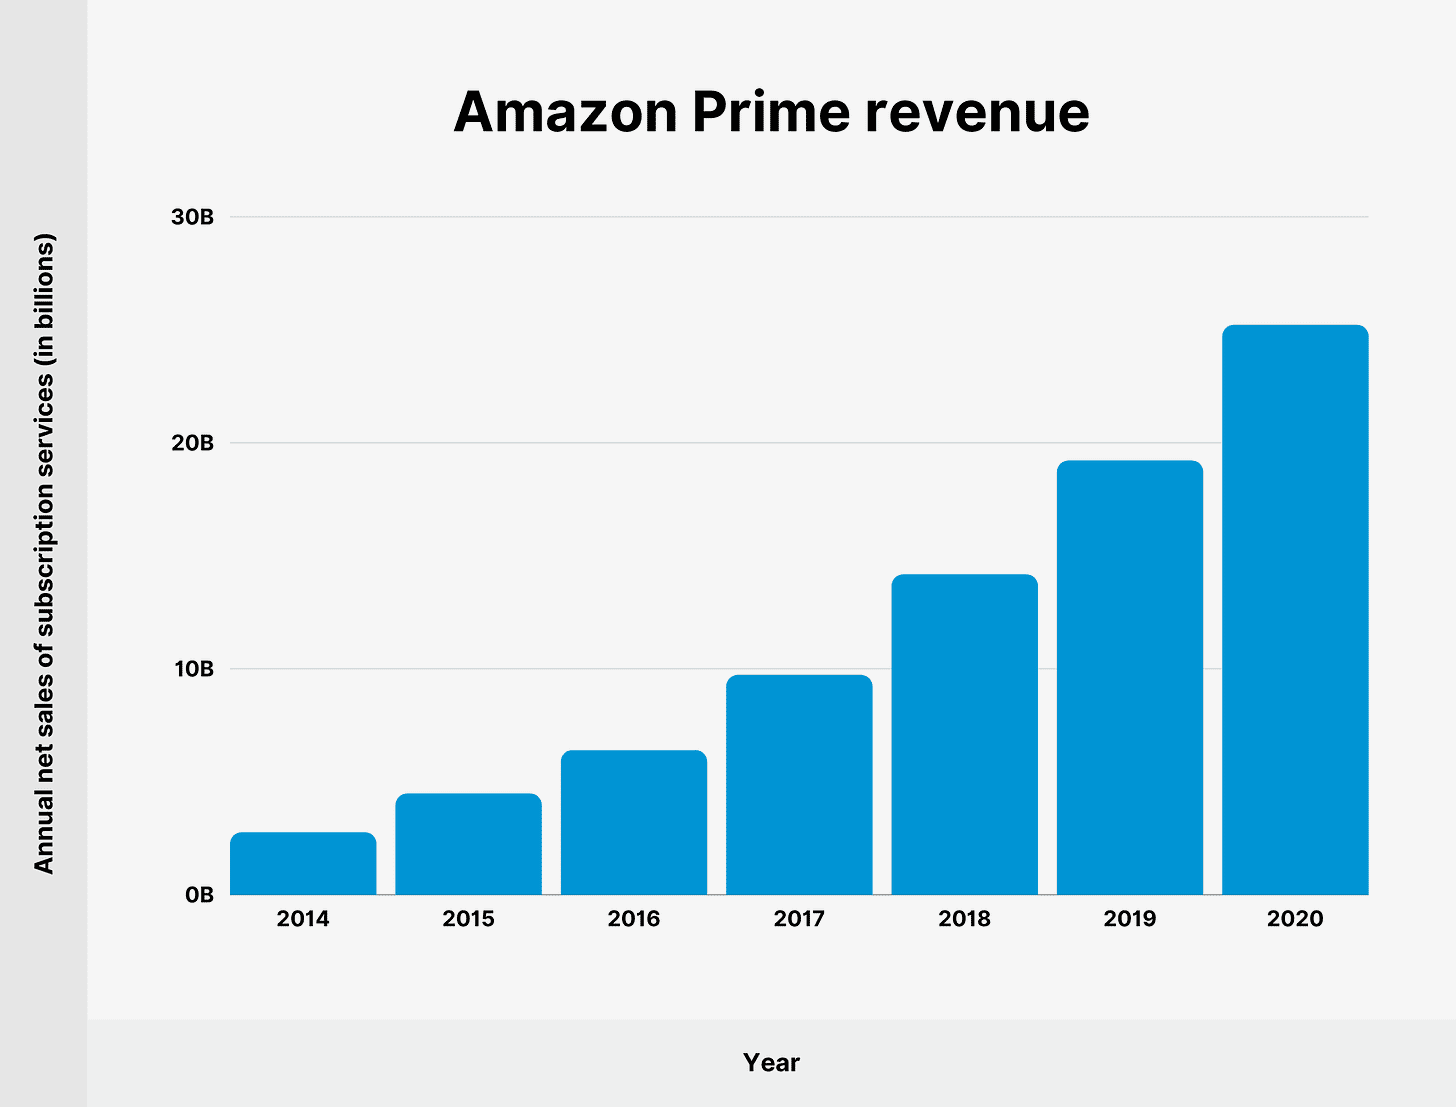 Amazon Prime revenue